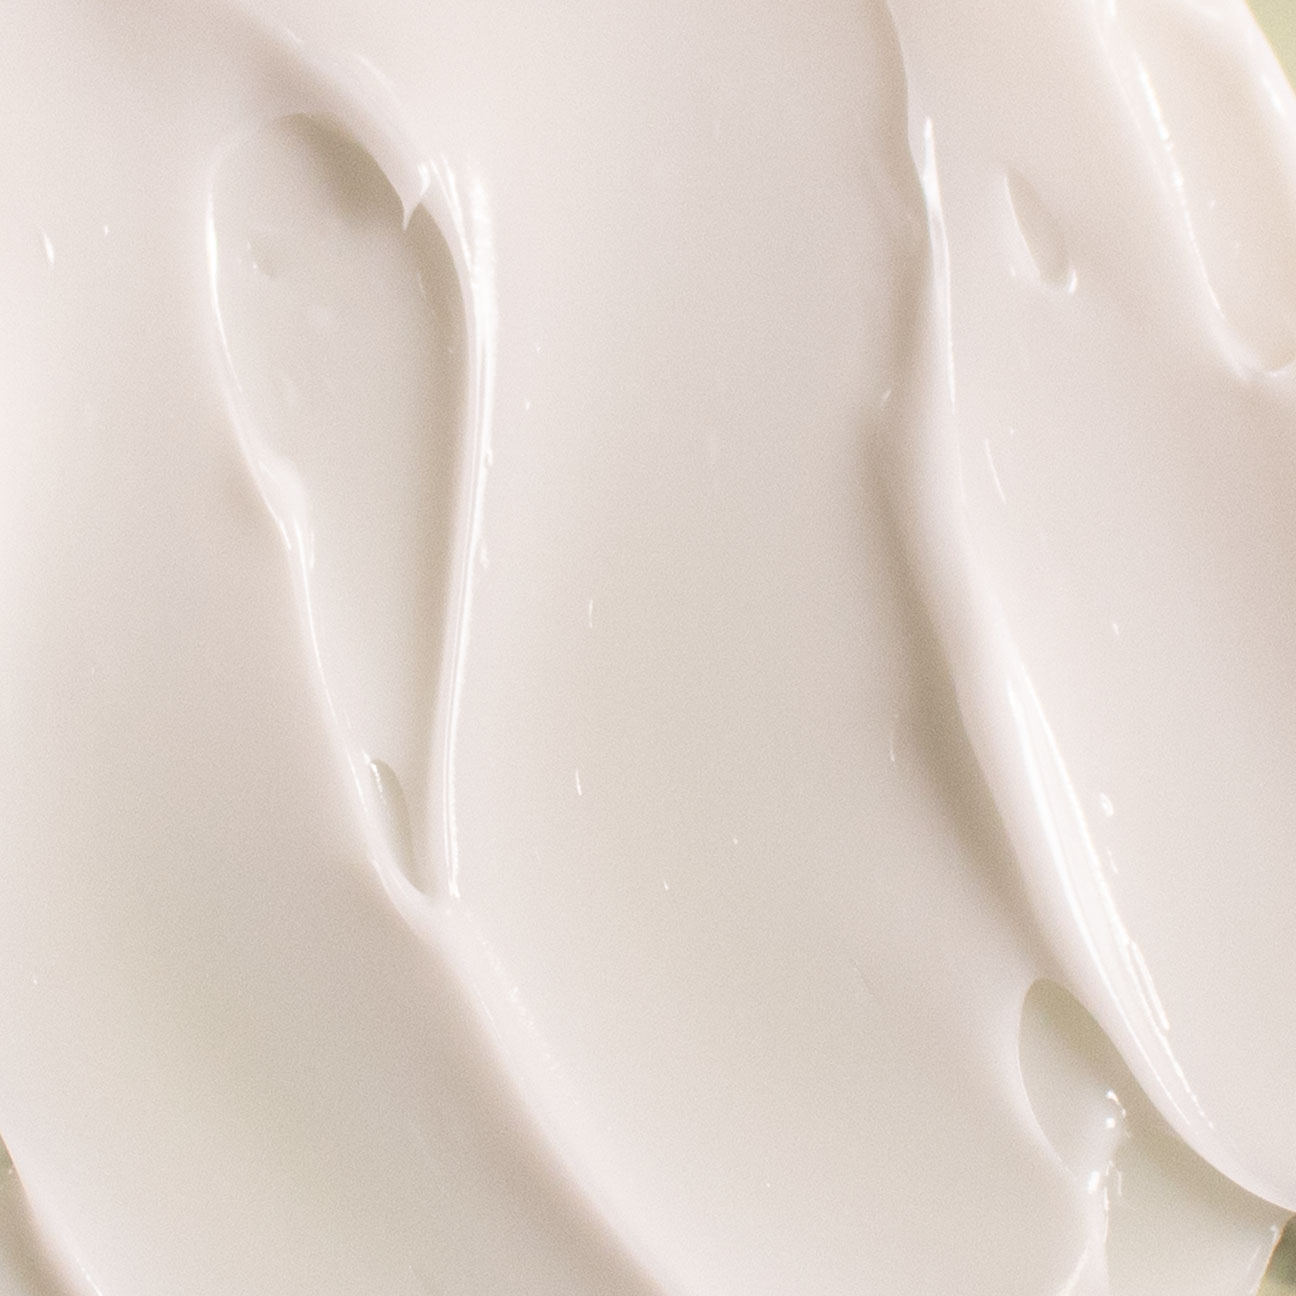 Vegan Fermented Cream image 2